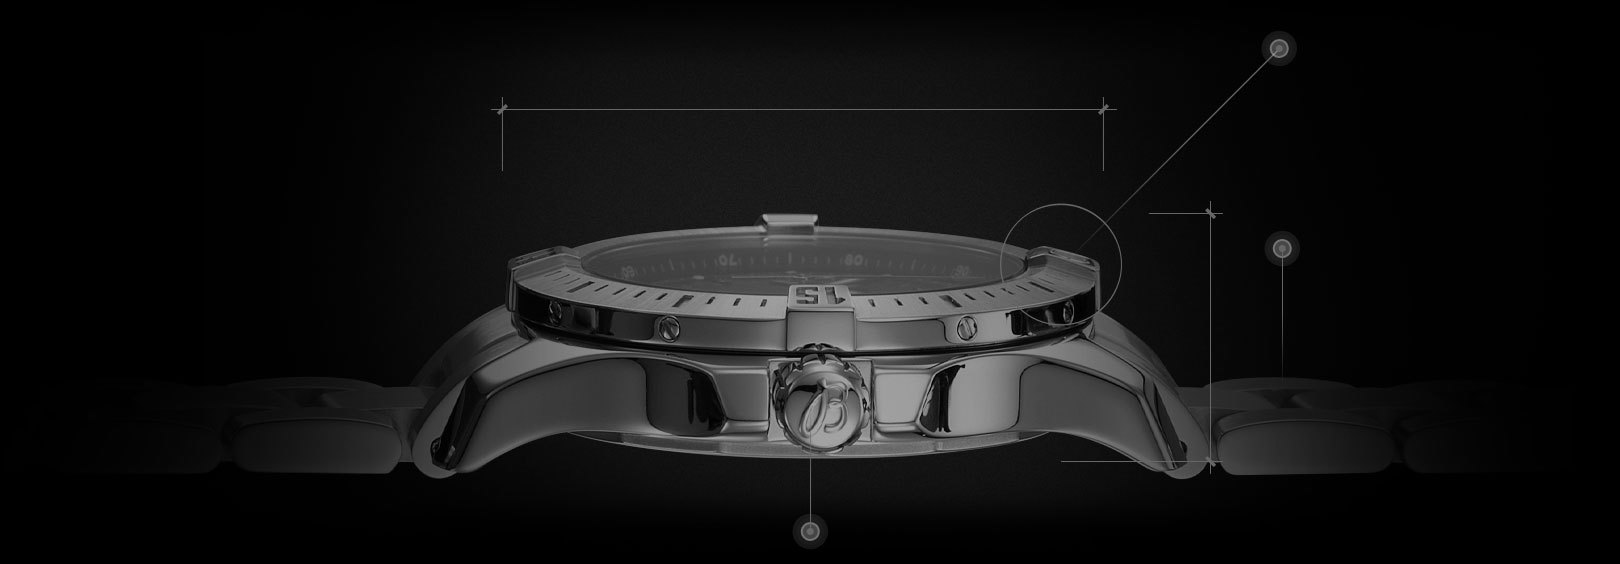 Replica Rolex Watch 29.95